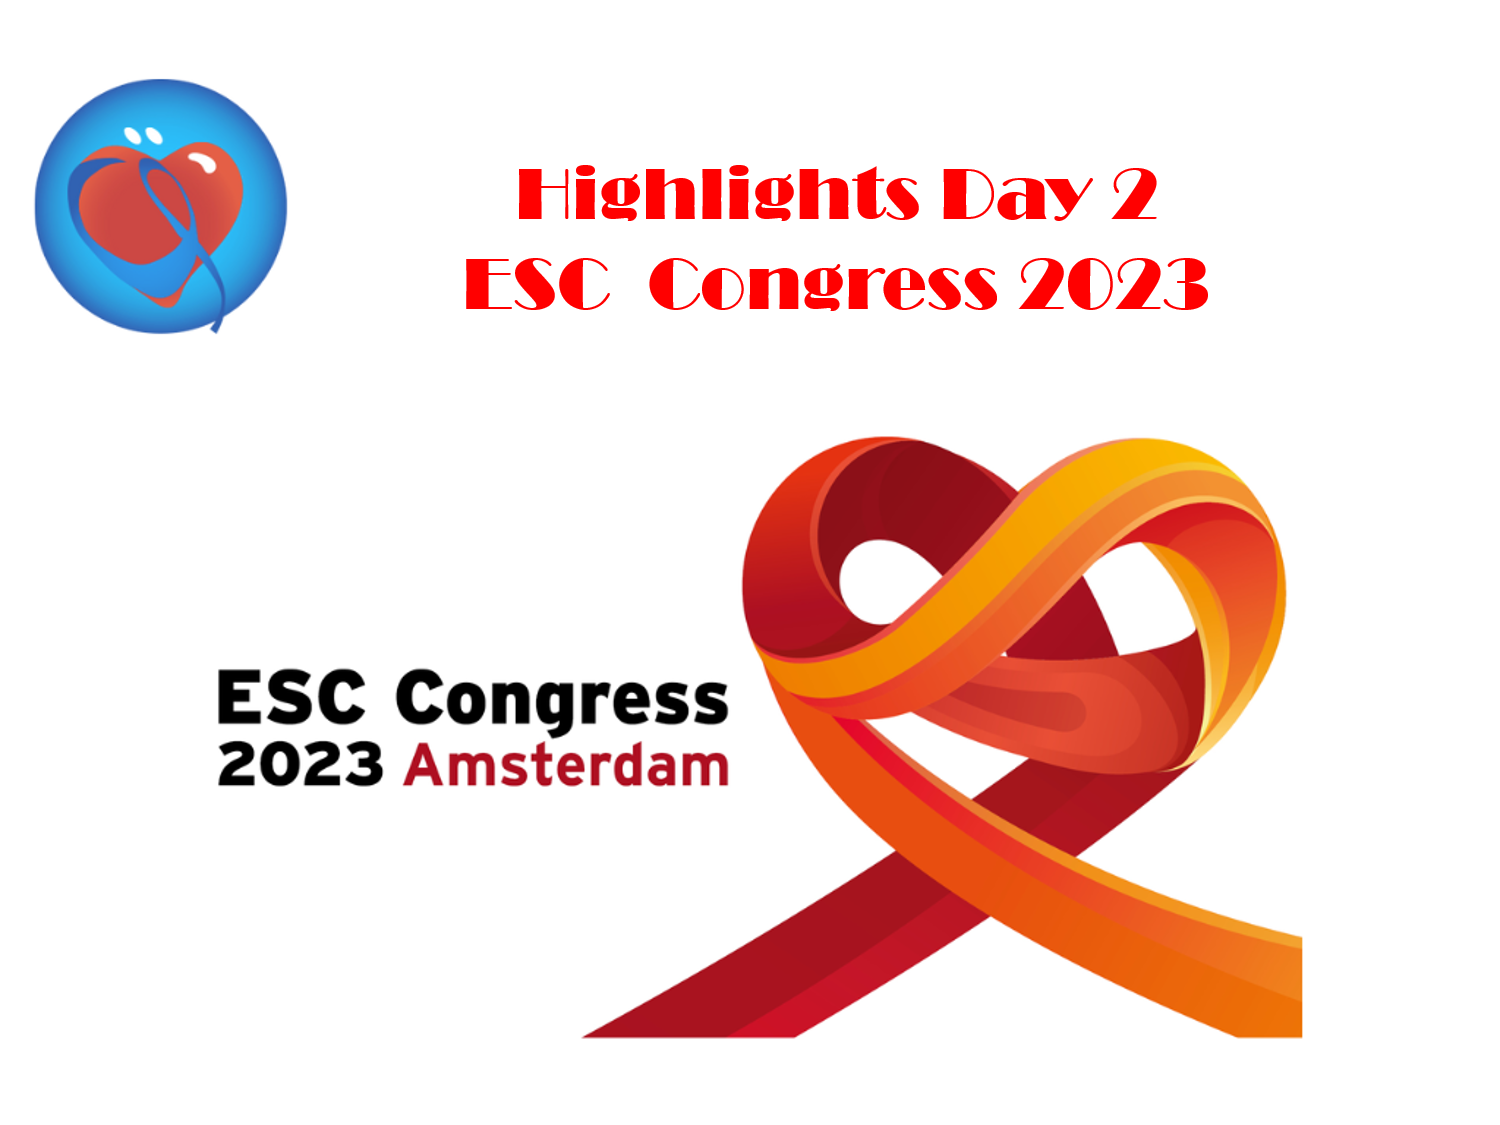 Les highlights  du Congrès Européen de Cardiologie, ESC 2023 , 2ème Jour